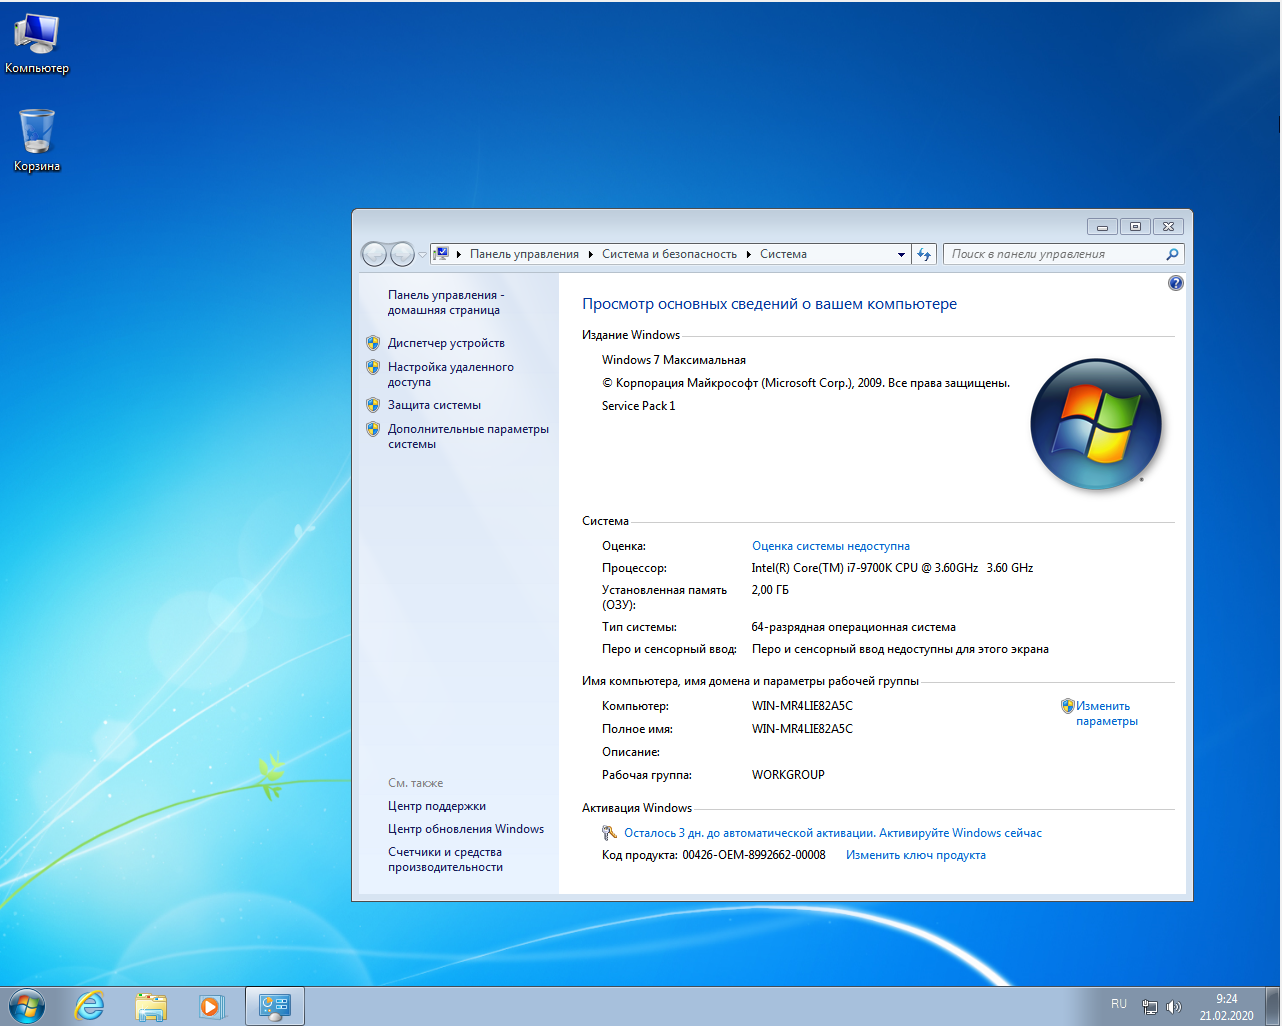 Windows 7 информация. 64-Разрядная Операционная система, процессор x64. Компьютер 2010 года на виндовс 7. Windows 7 Ultimate ключ. Виндовс 7 максимальная 64 бит картинки.